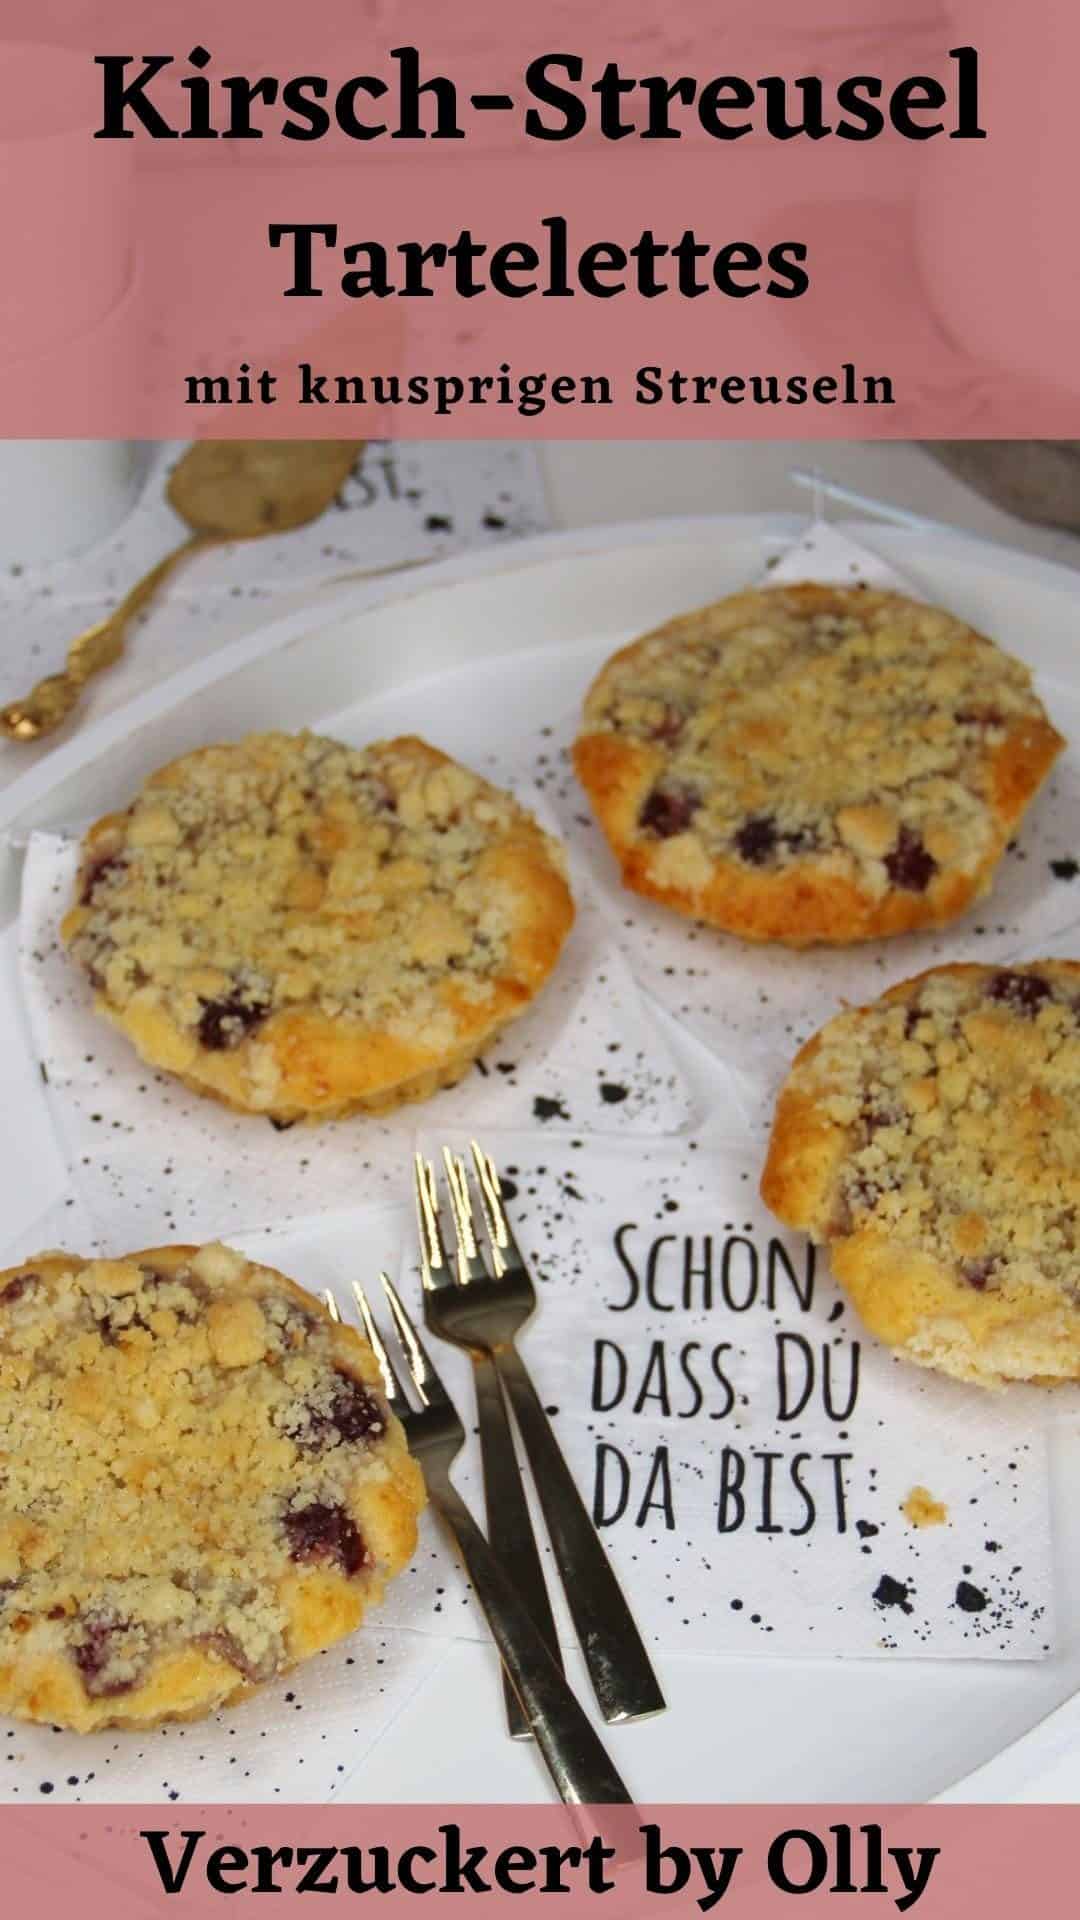 Pin zu Pinterest: Kirsch-Streusel Tartelettes